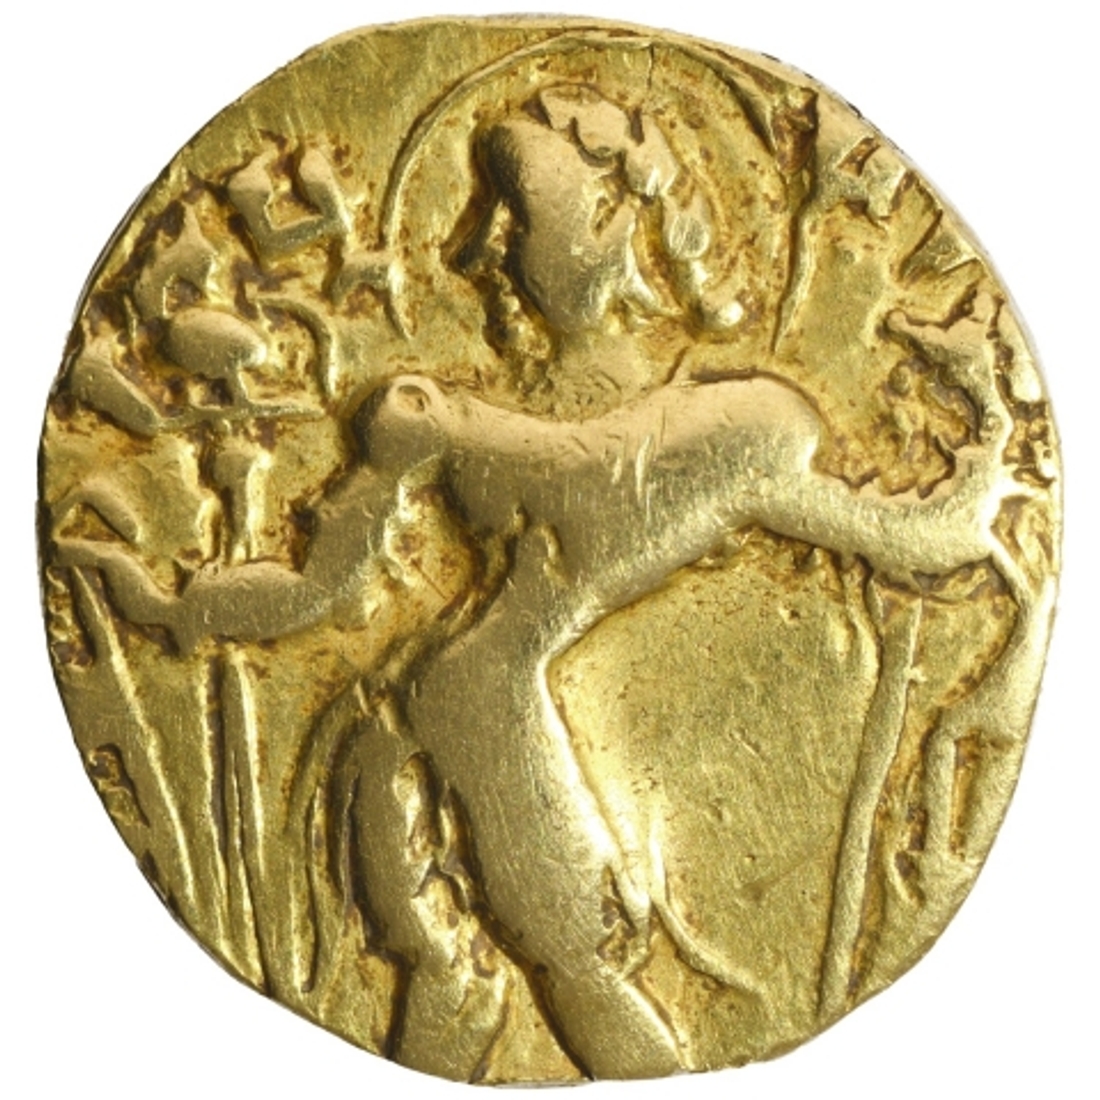 Rare Gold Dinar Coin of Kumaragupta I of Gupta Dynasty.